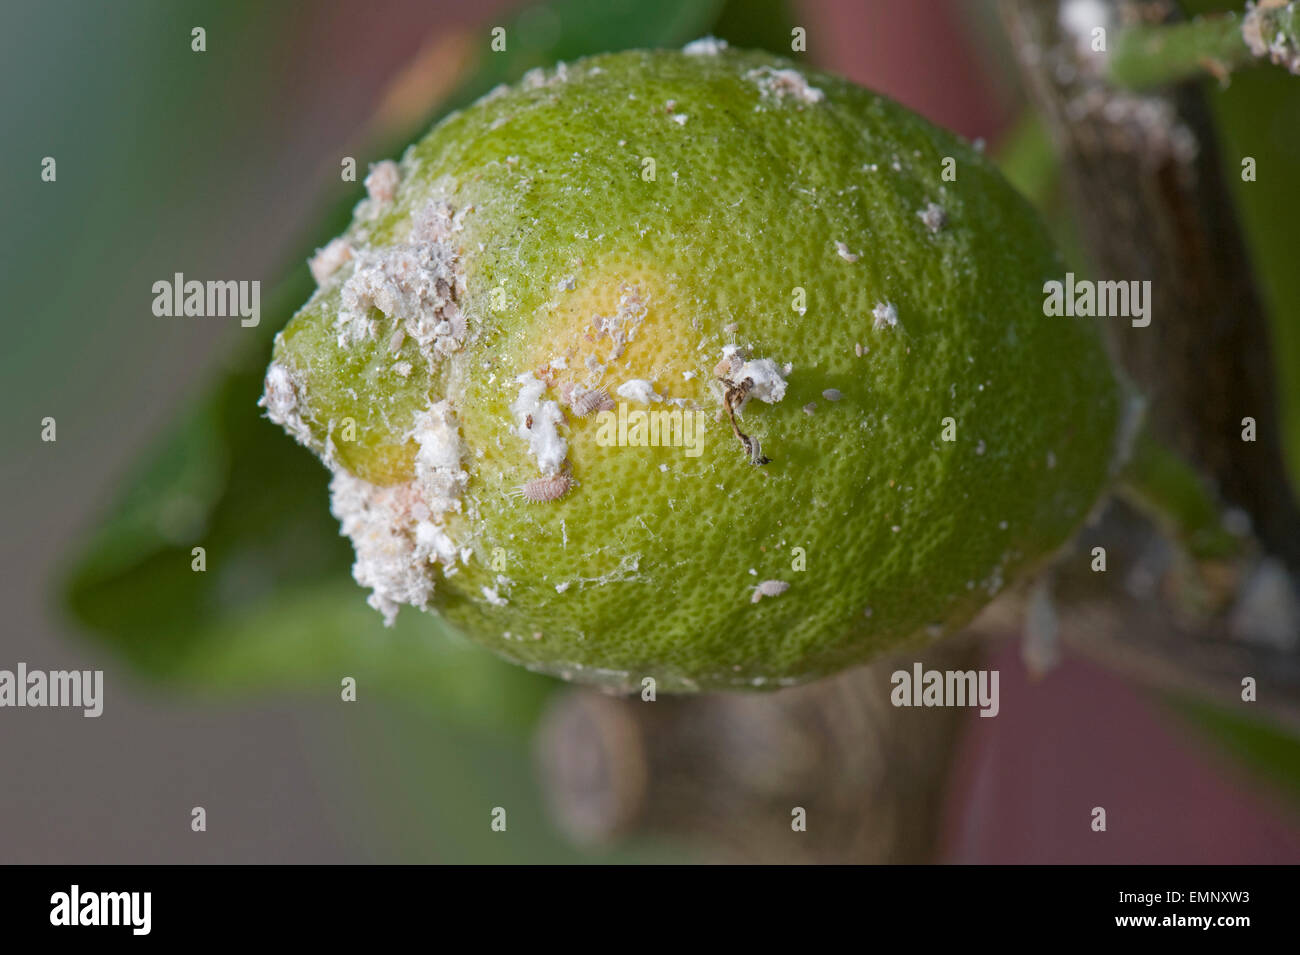 Glasshouse mealybug, Pseudococcus viburni, infestion on a conservatory grown lemon tree with fruit Stock Photo